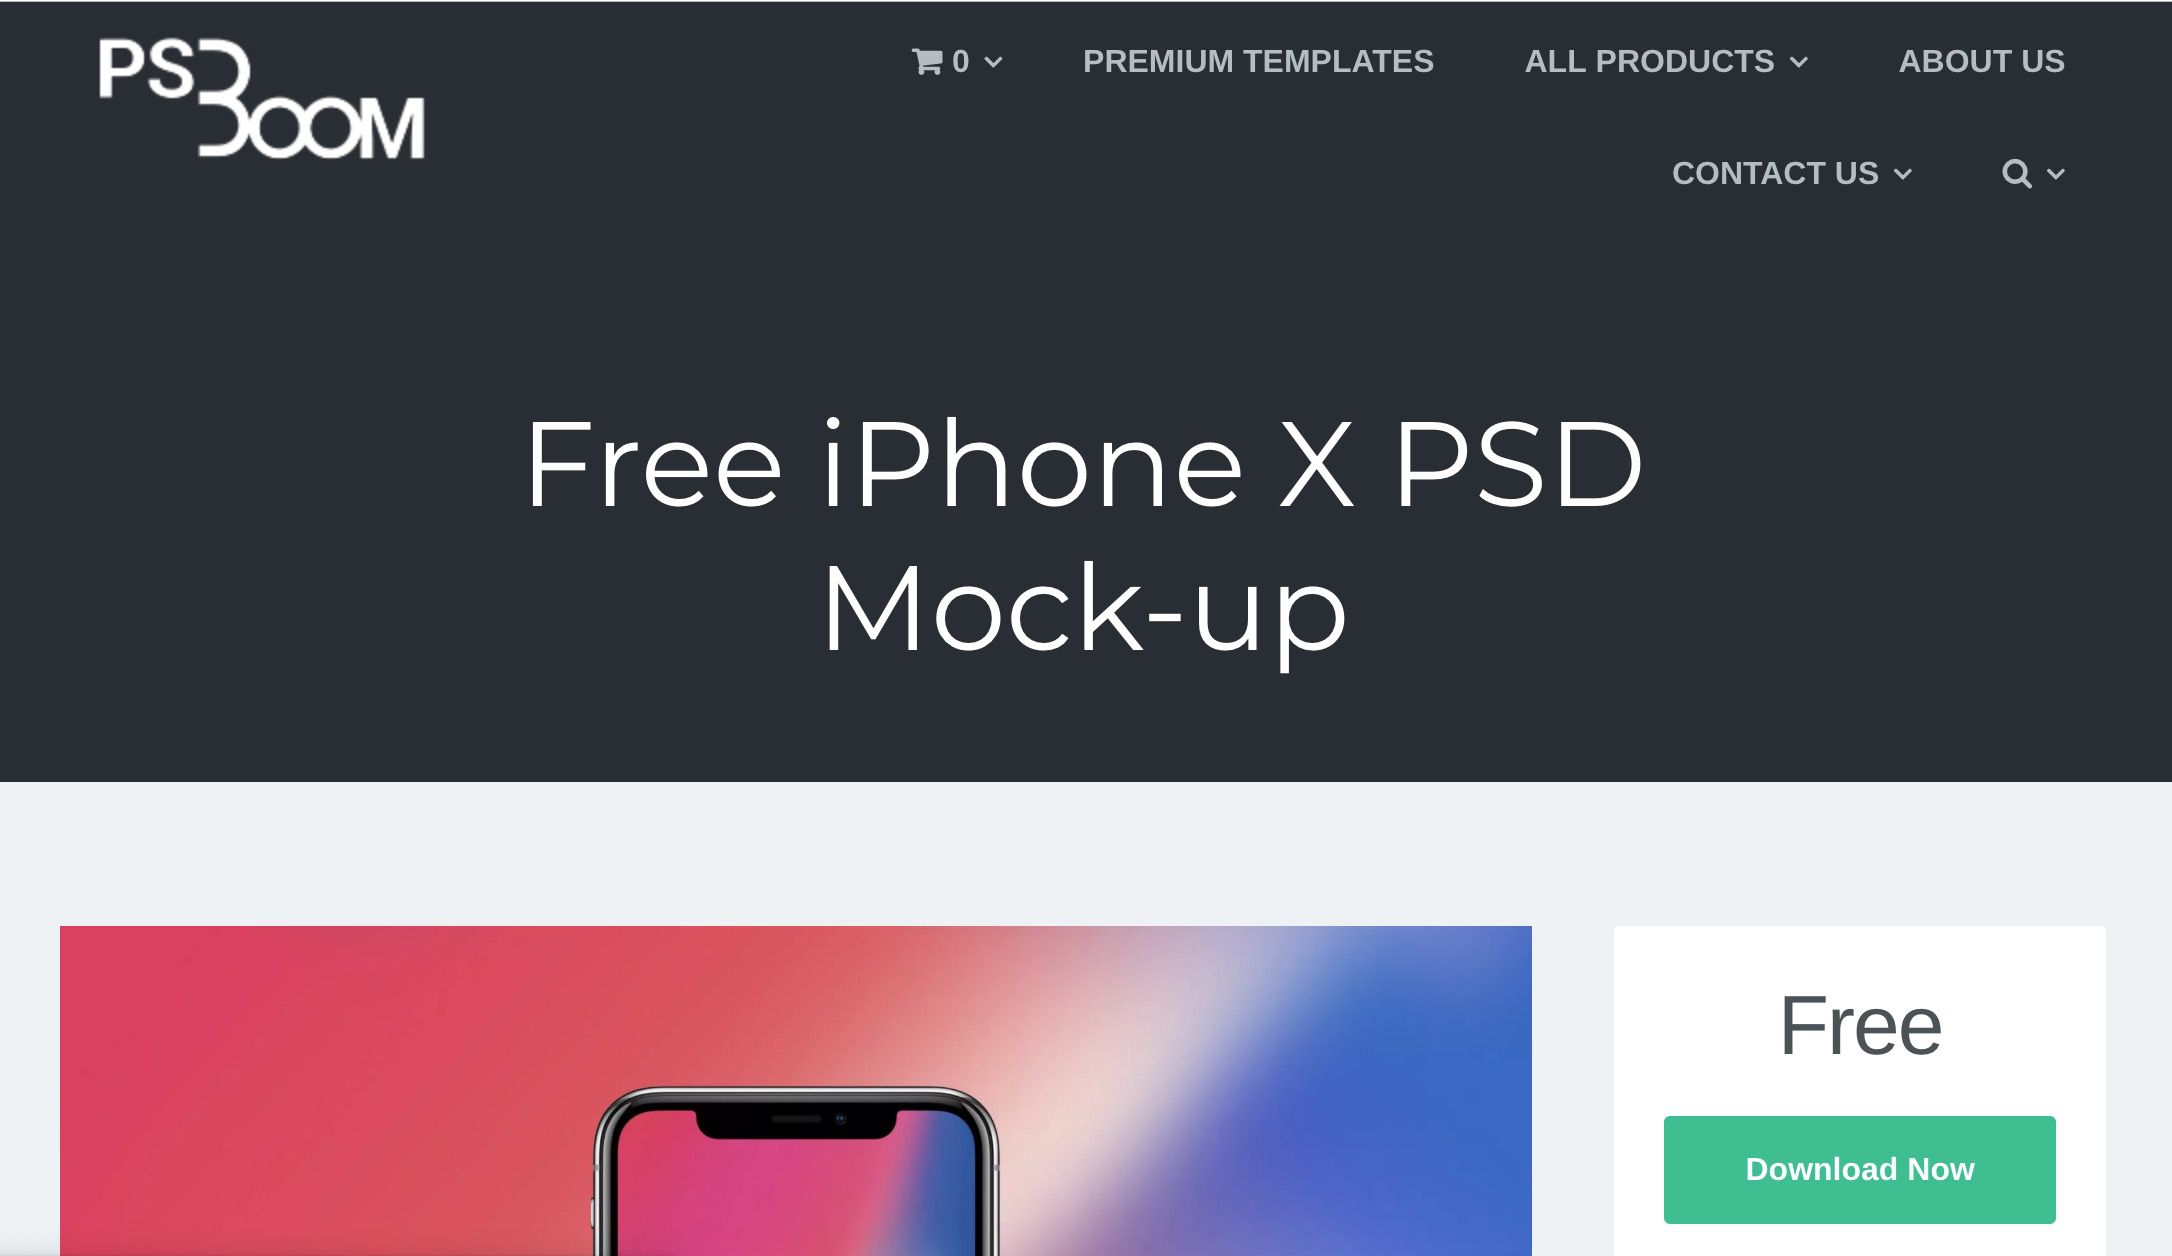 PS Boom-website met gratis iPhone X PSD-mock-up